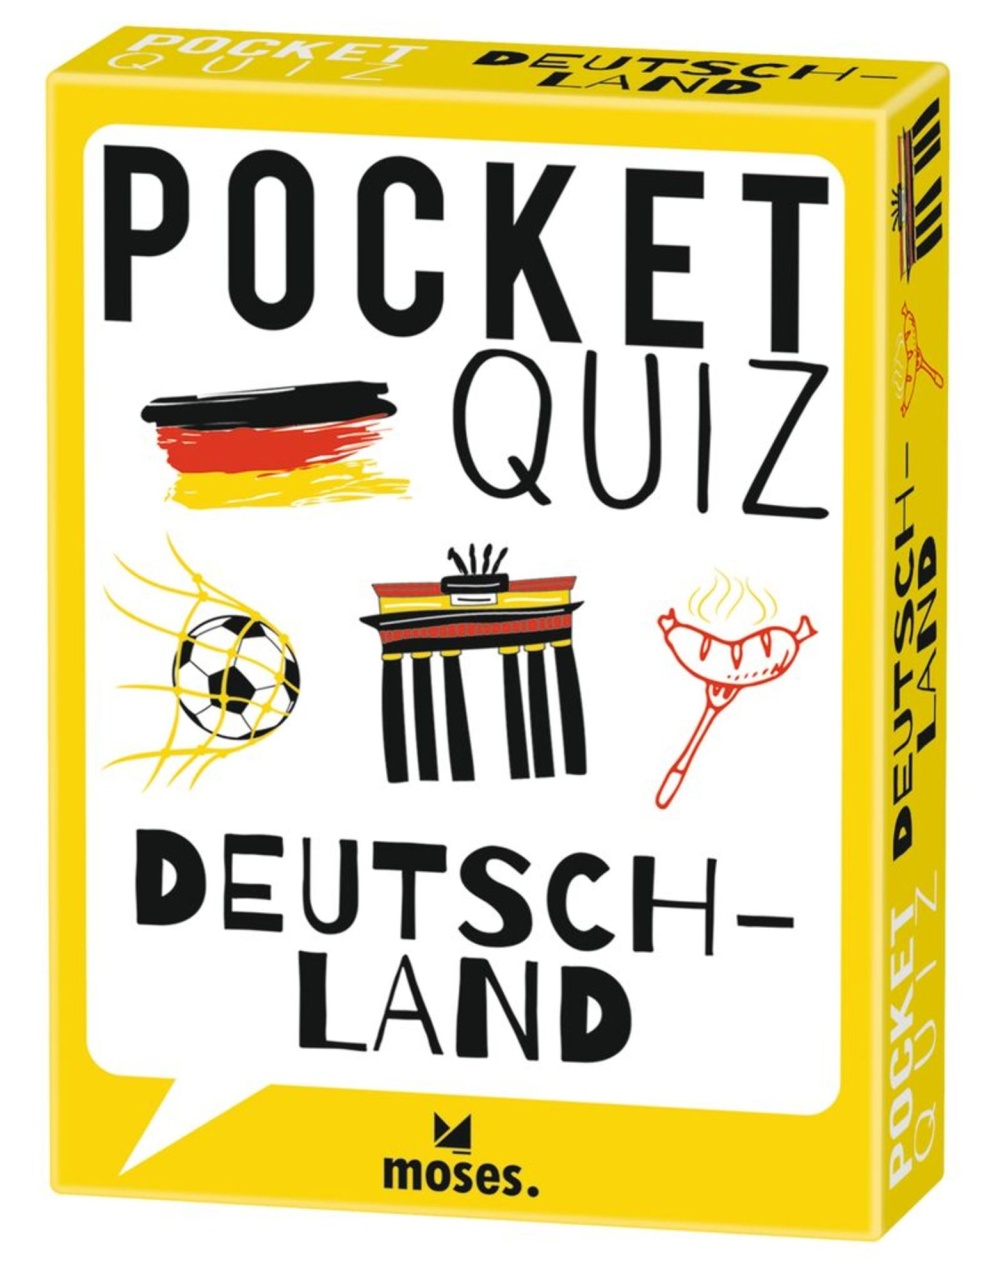 Pocket Quiz Deutschland von Moses